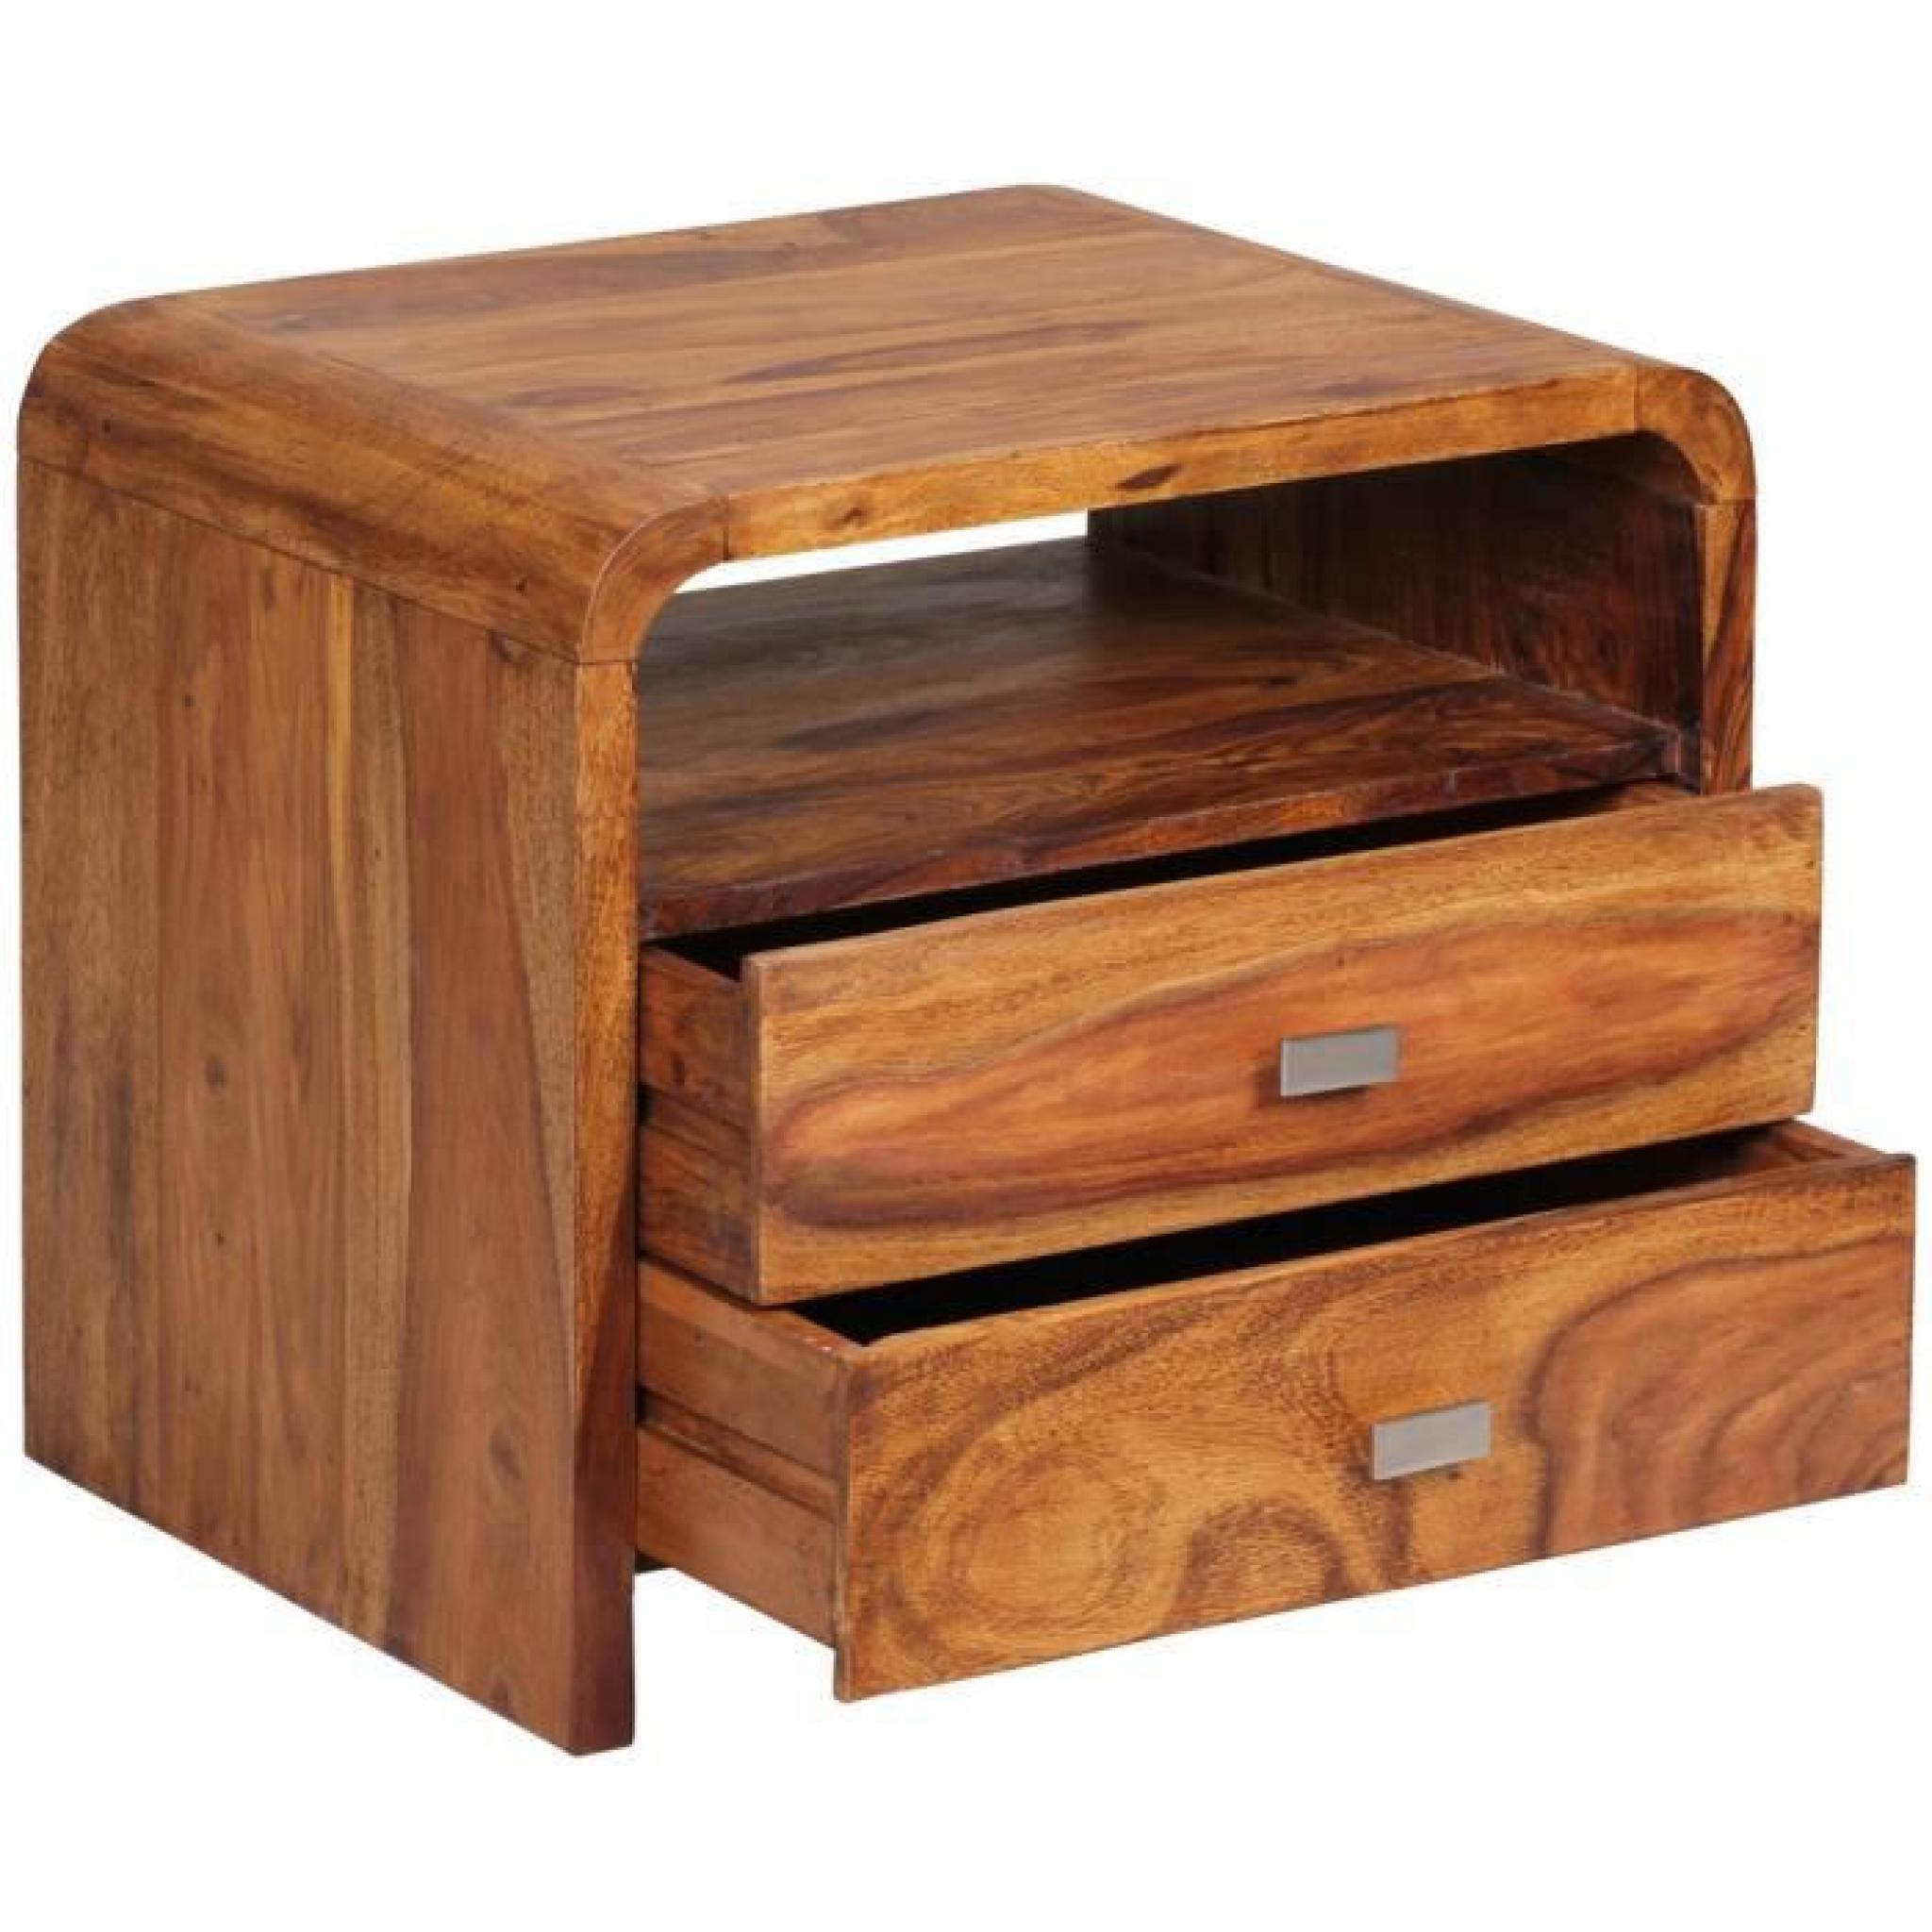 Table de chevet en bois massif de palissandre avec tiroir, H 40 x L 40 x P 30 cm pas cher